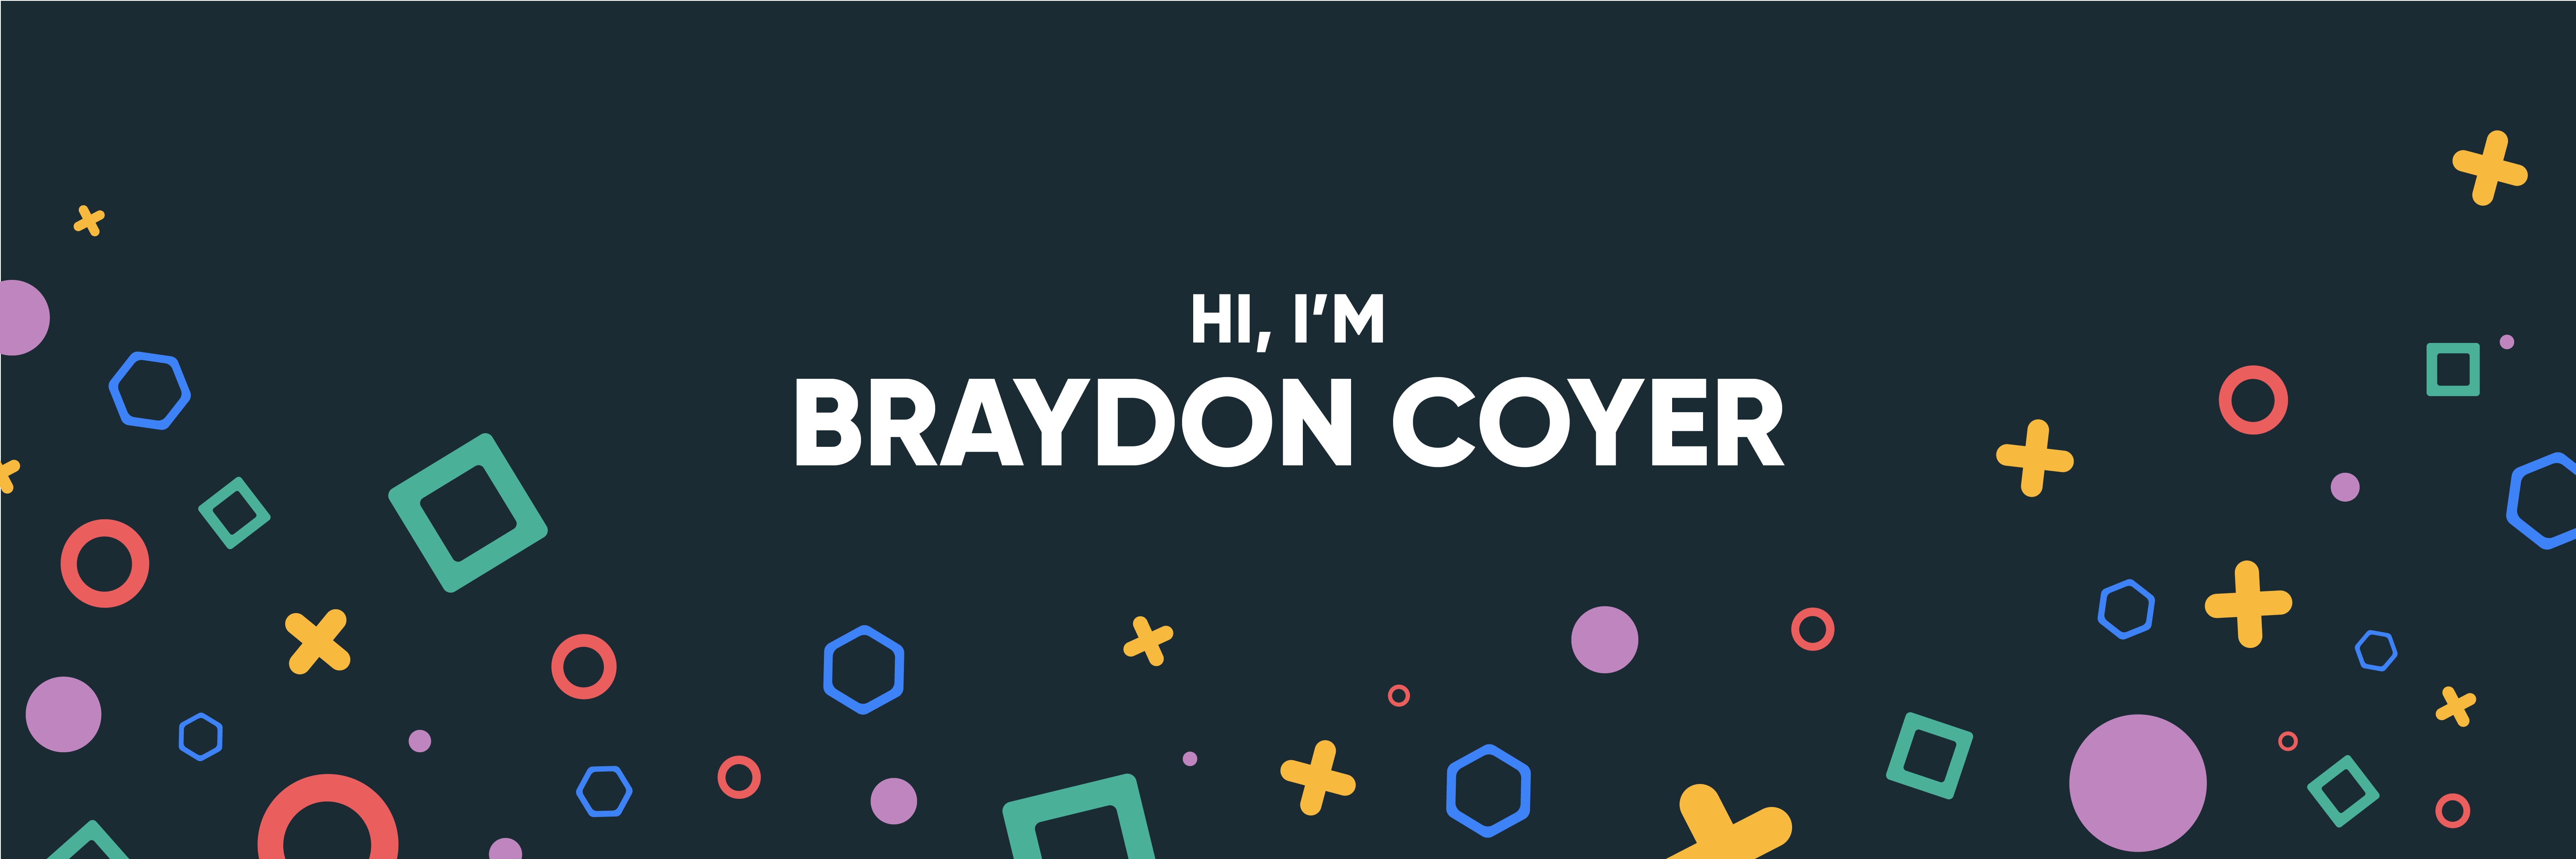 Braydon's GitHub Banner